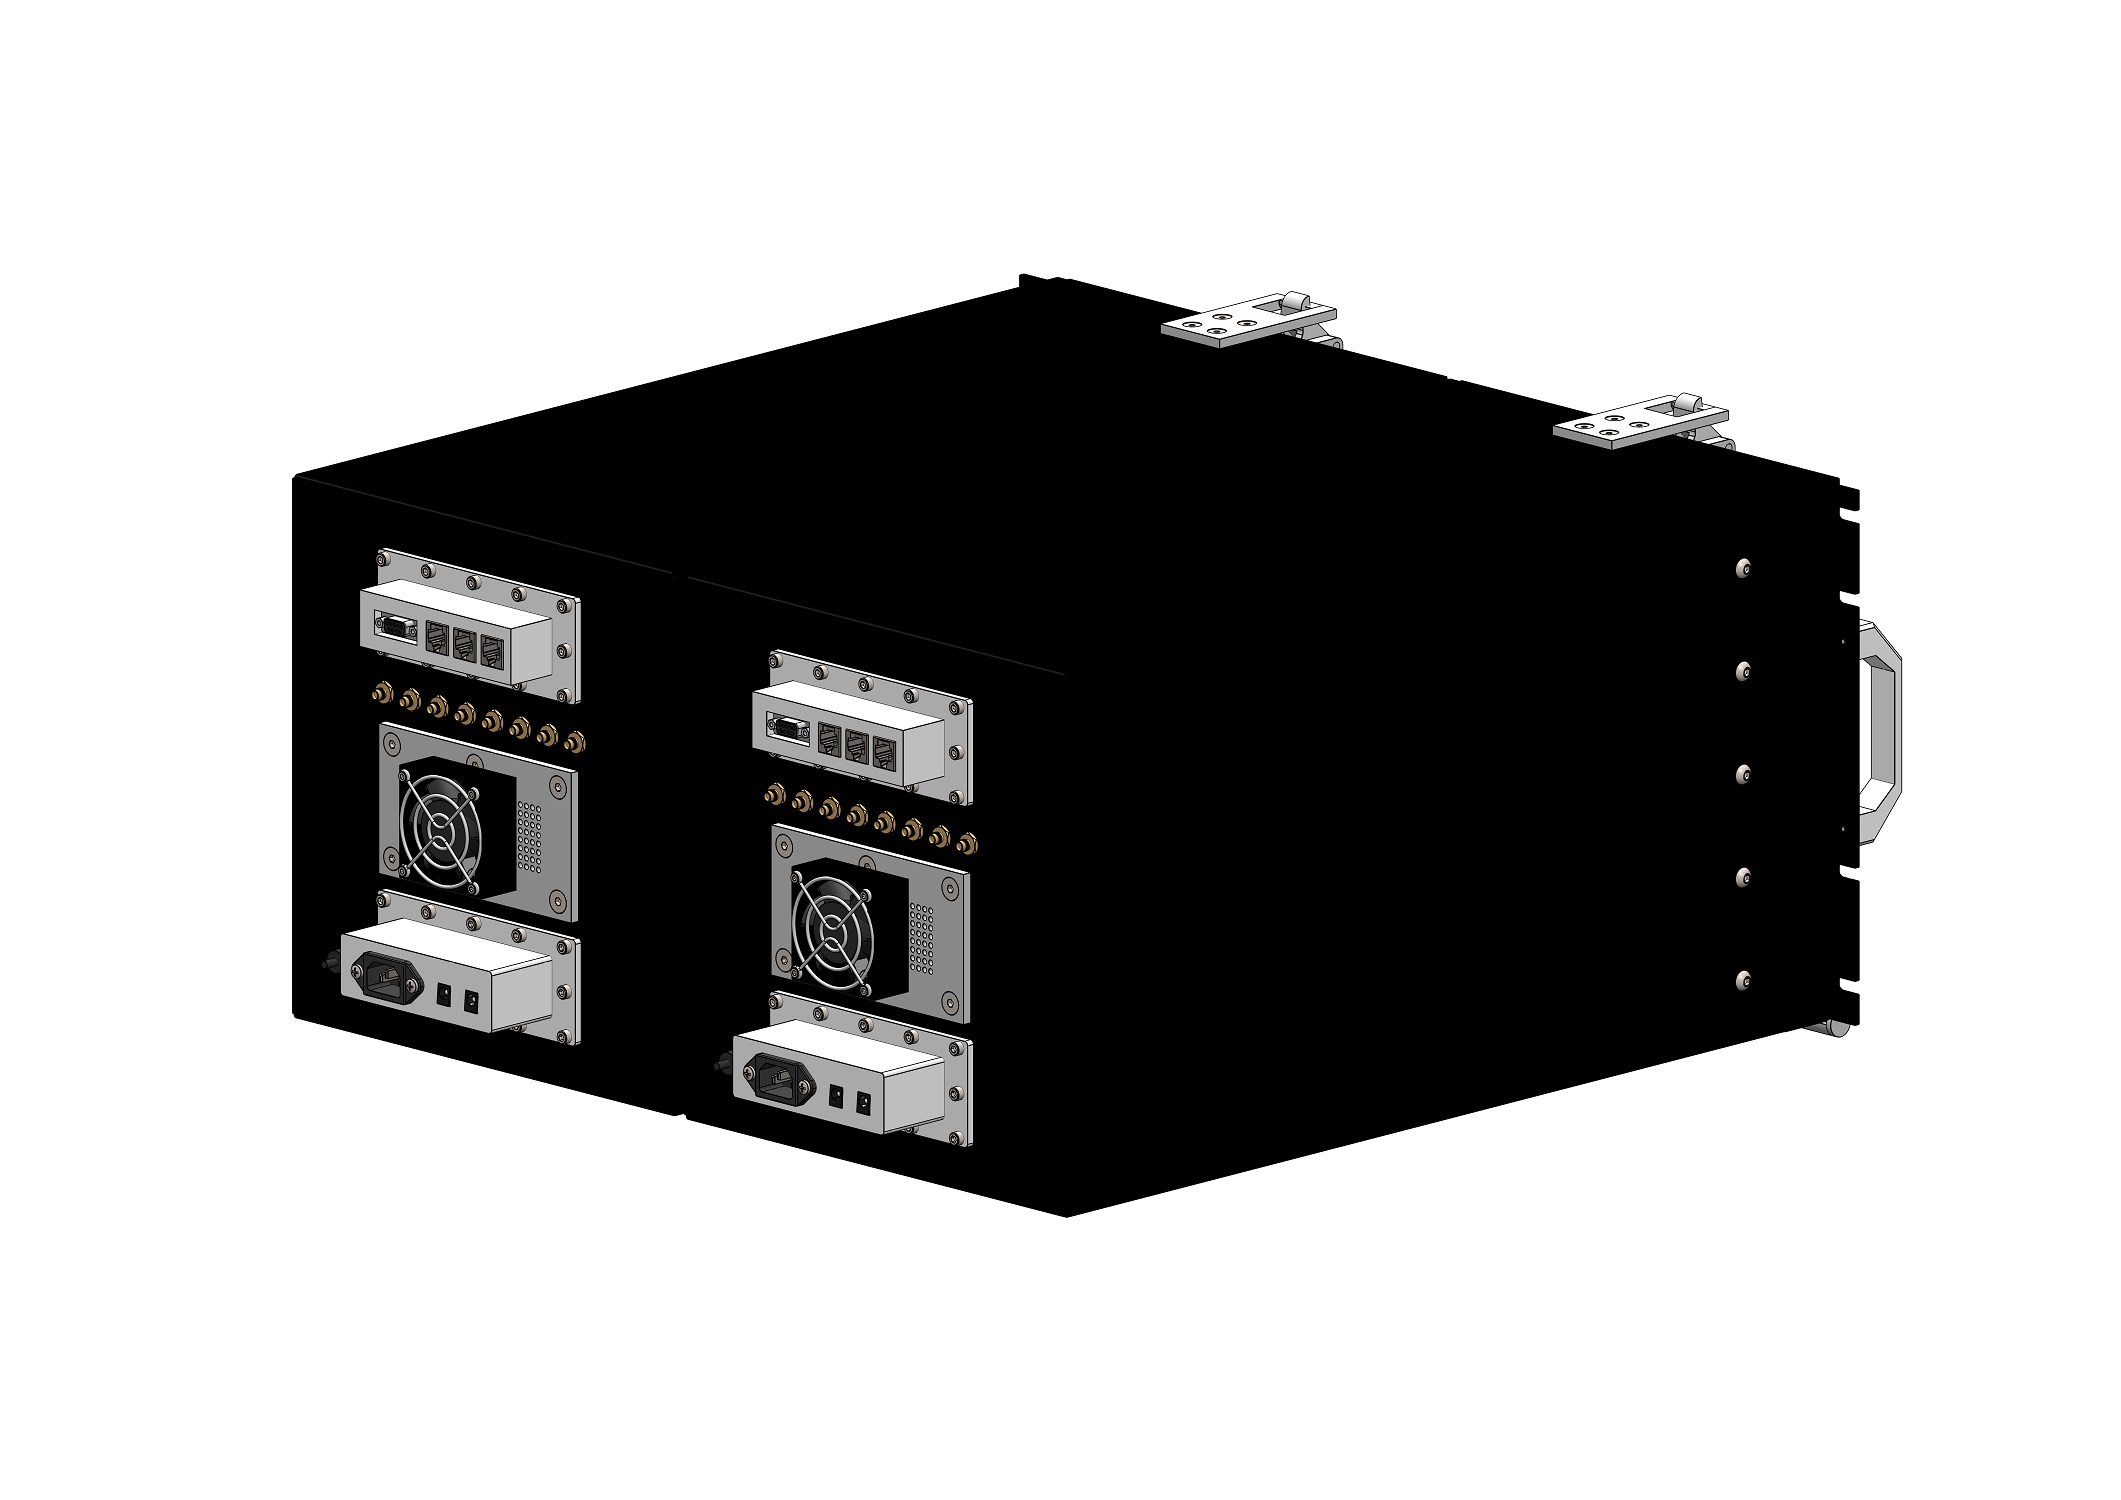 HDRF-D1224-F RF Shield Test Box